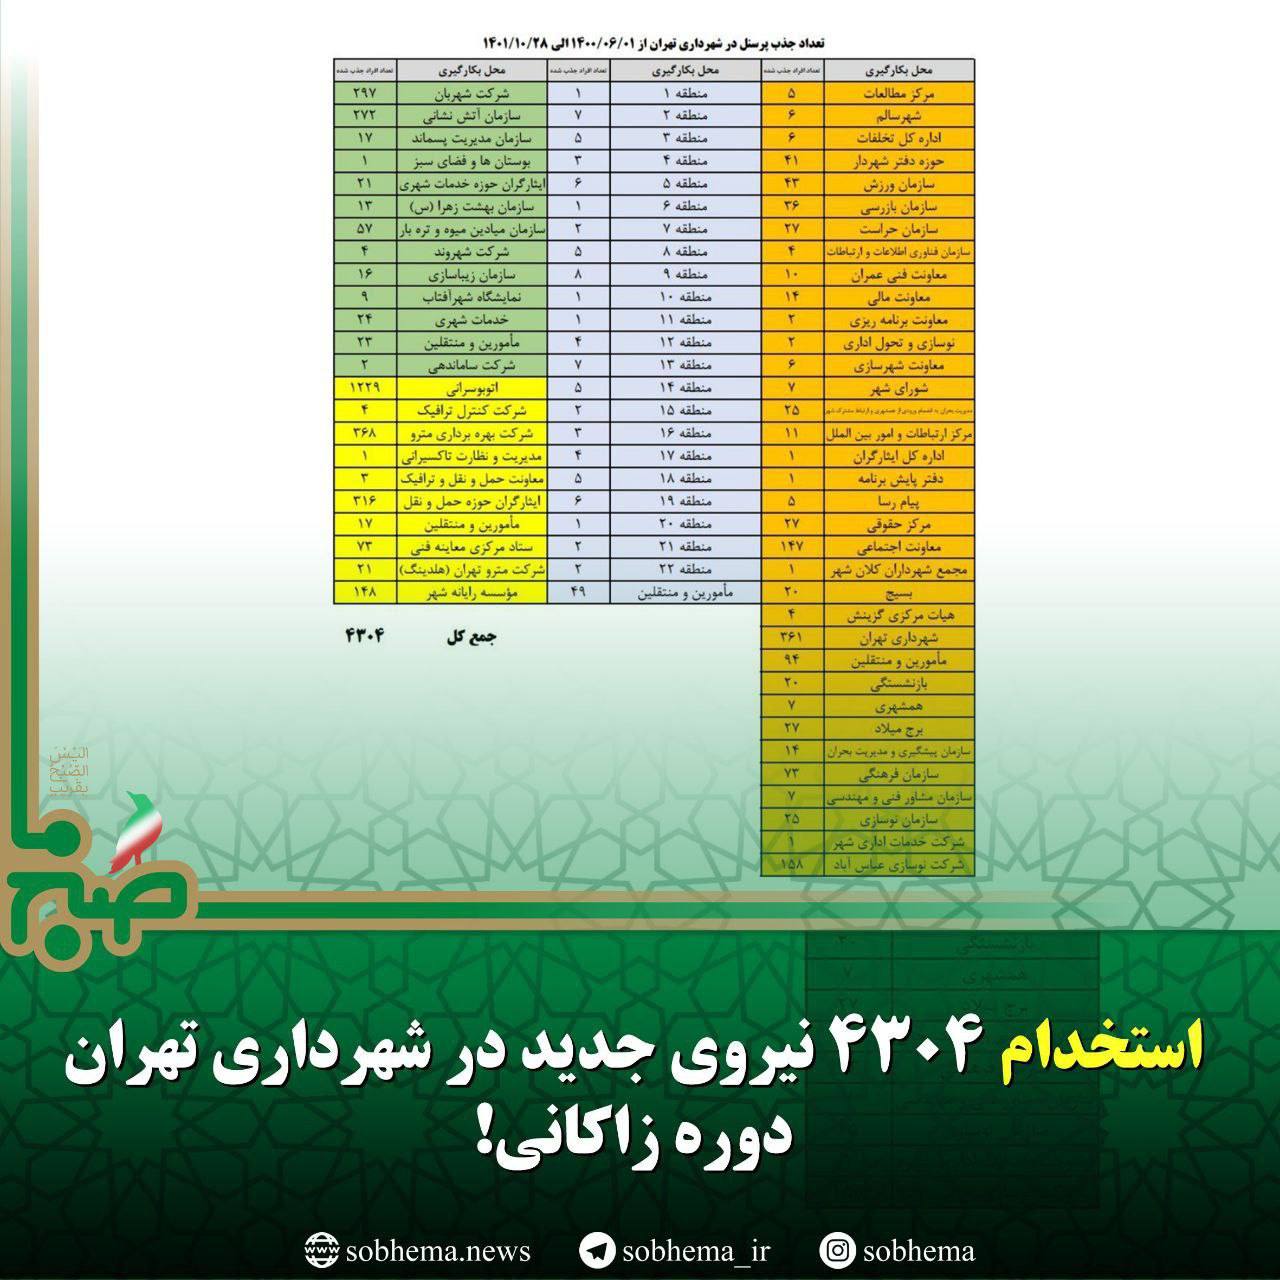 استخدام ۴۳۰۴ نیروی جدید در شهرداری تهران دوره زاکانی!